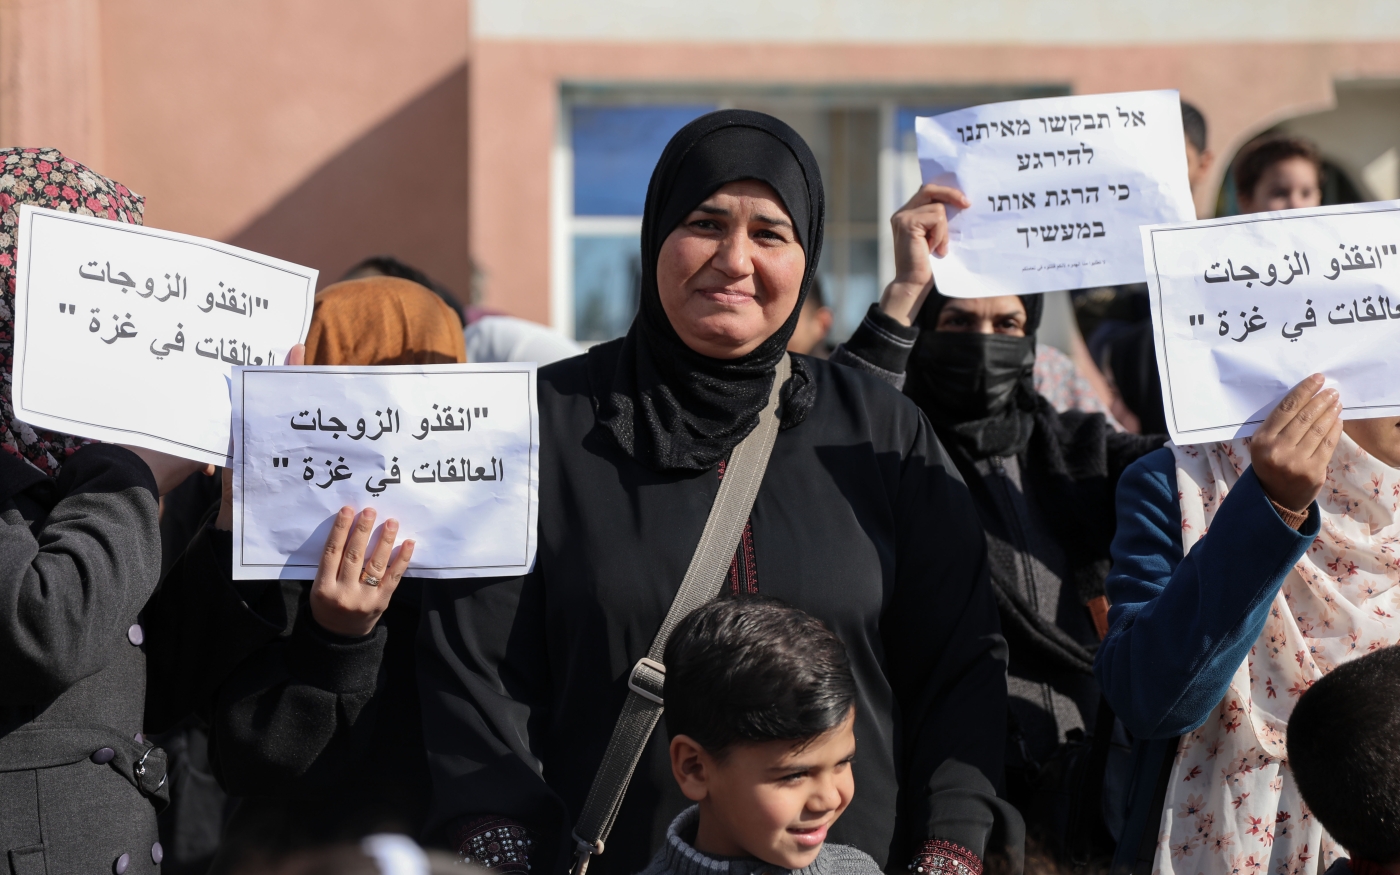 Des Palestiniennes brandissent des pancartes en arabe et en hébreu lors d’une manifestation contre la « politique de séparation » d’Israël dans le nord de Gaza, le 17 janvier 2023 (MEE/Mohammed al-Hajjar)